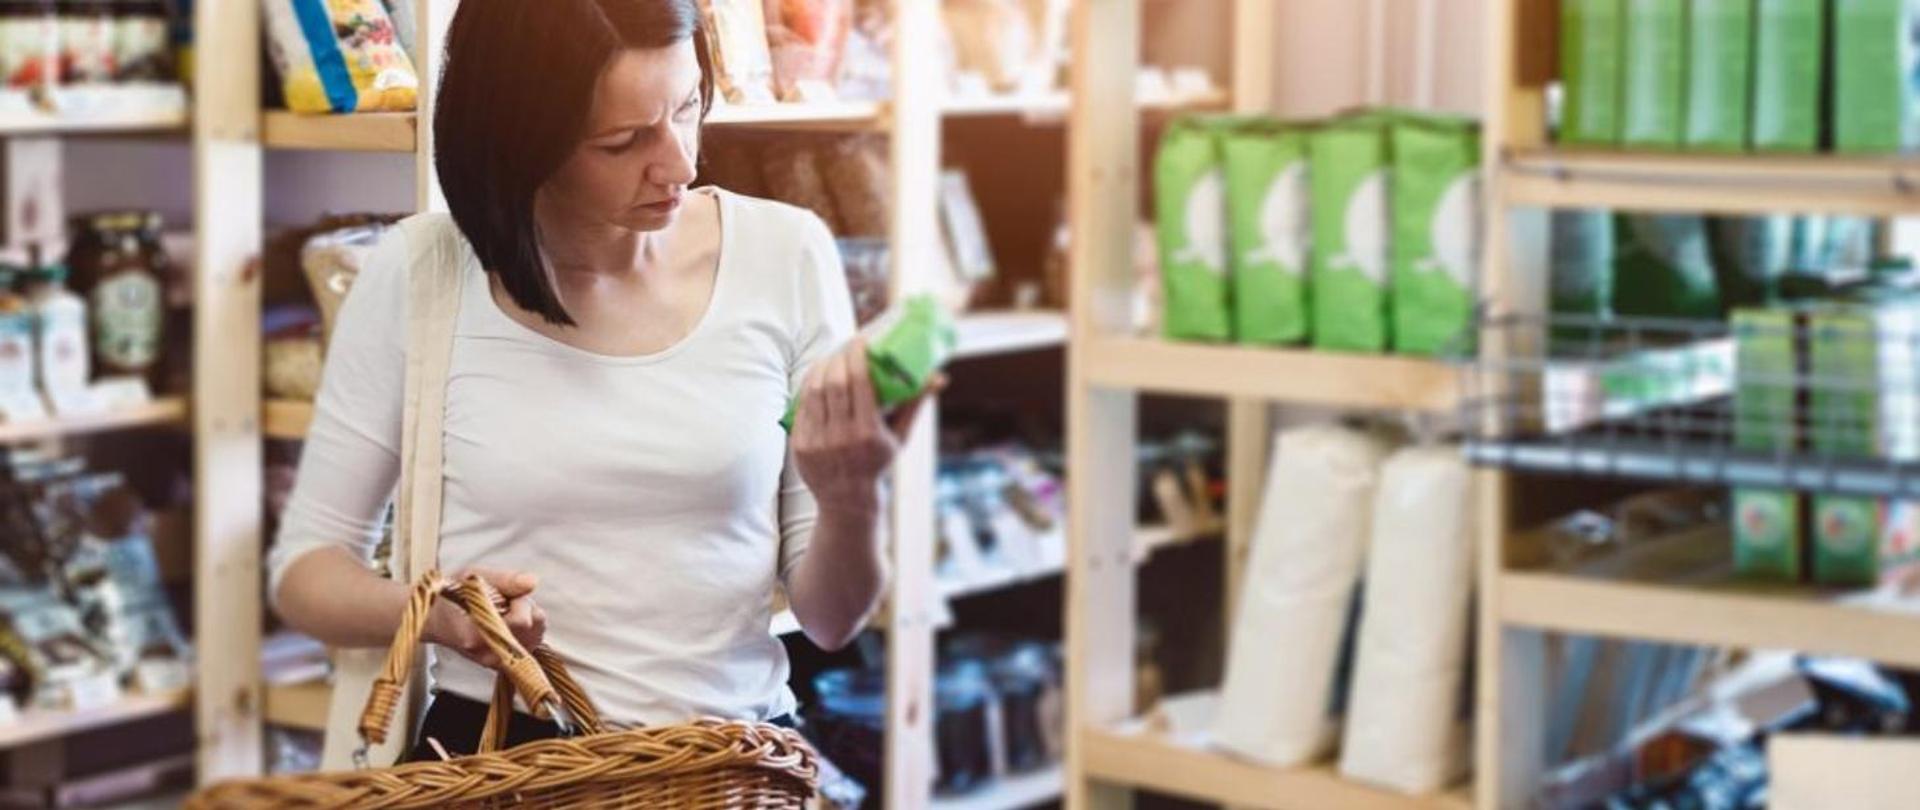 Na zdjęciu widać kobietę z koszykiem wiklinowym w ręce, trzymającą w drugiej ręce produkt w zielonym opakowaniu. Wokół kobiety są drewniane półki sklepowe wypełnione towarami.